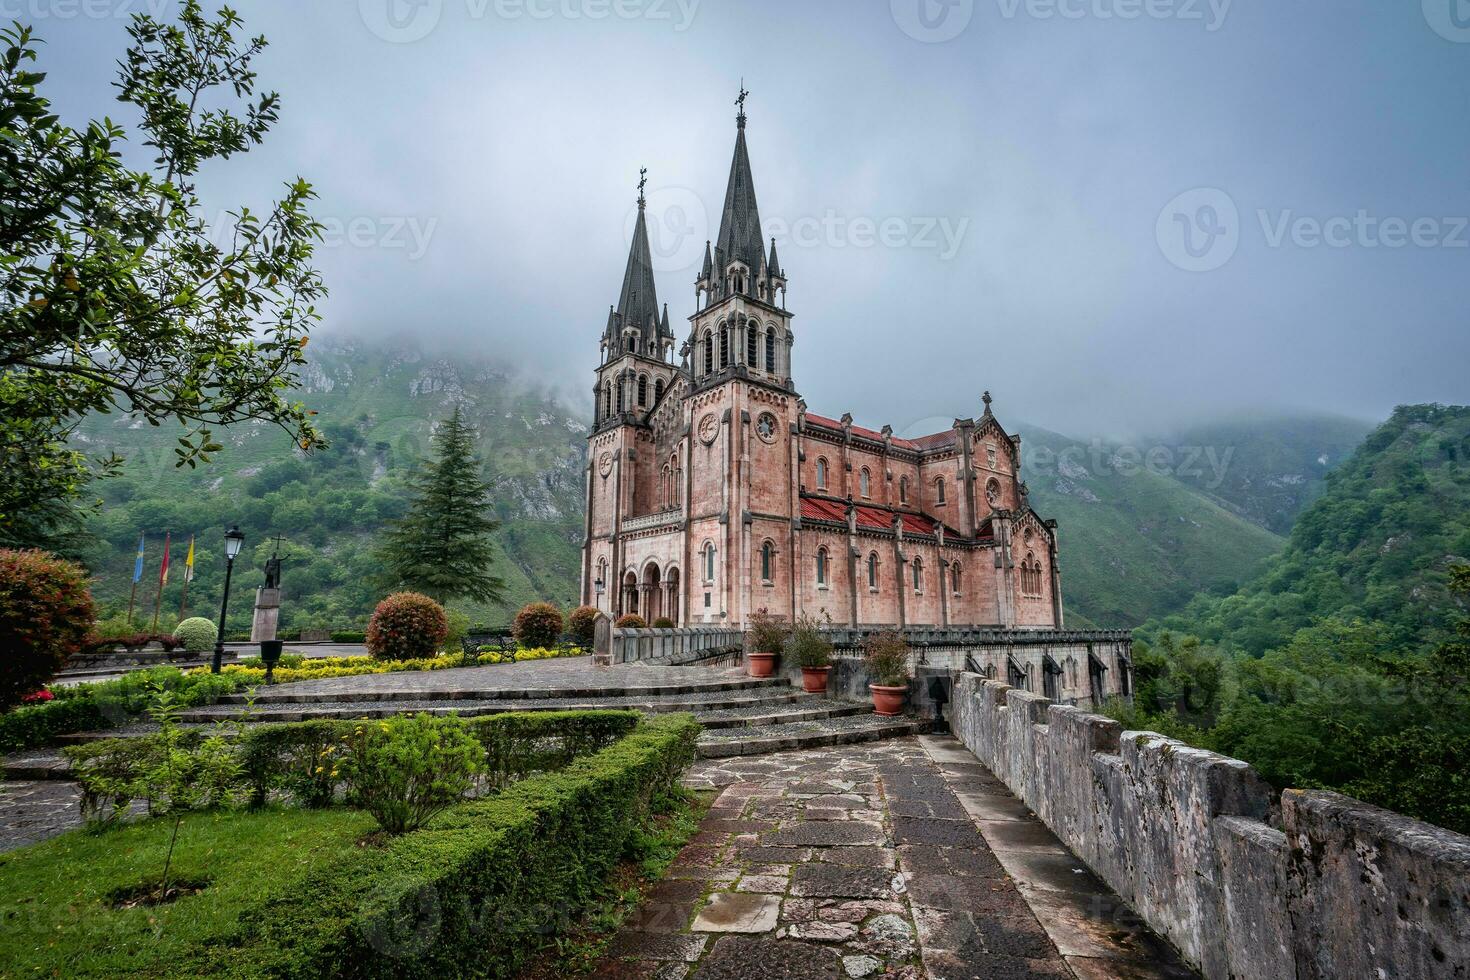 basilika de santa maria la verklig de covadonga, asturien, Spanien. foto